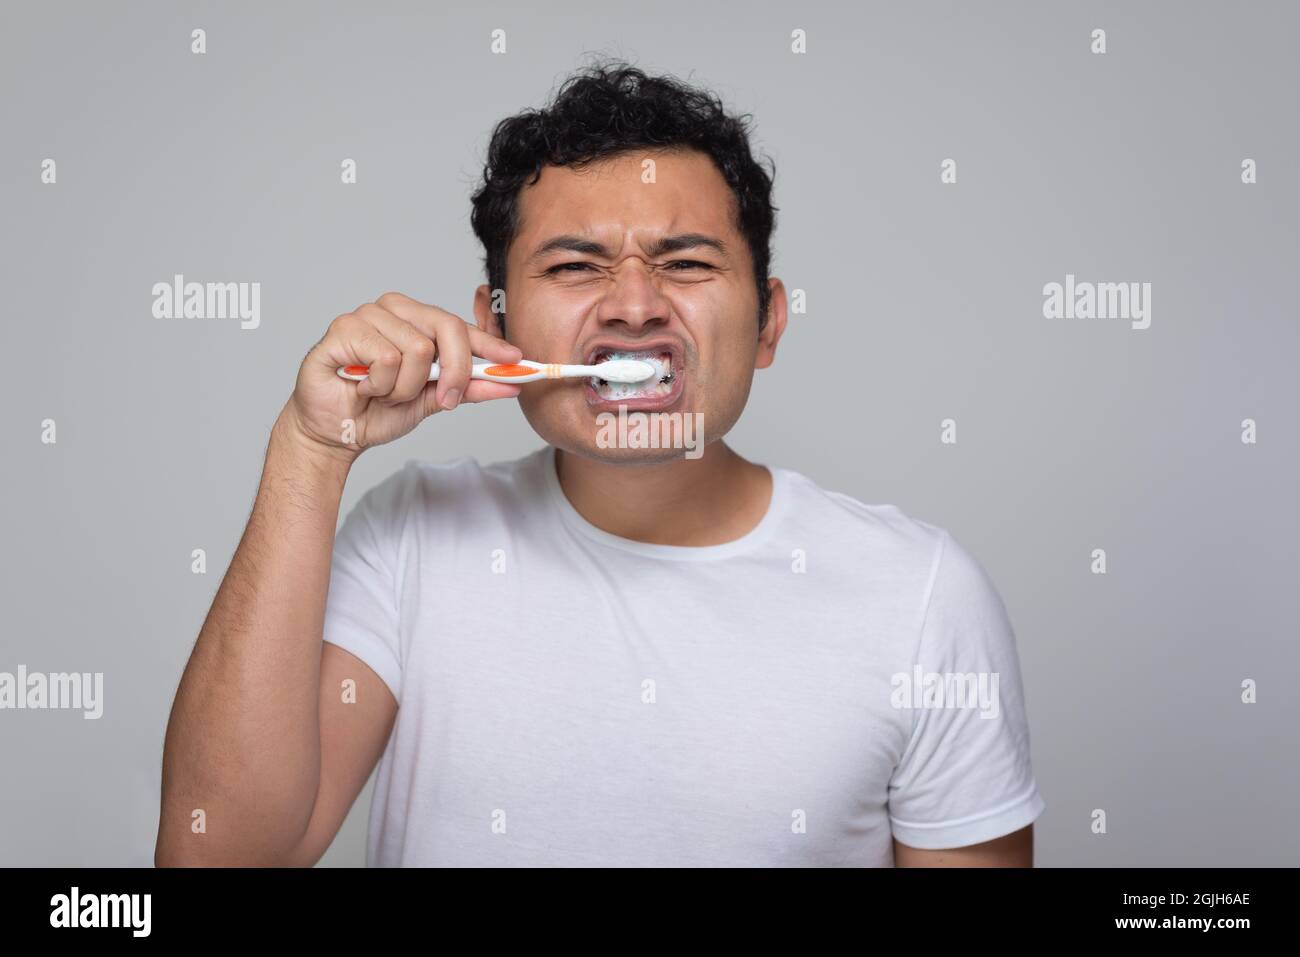 Un hombre mexicano con aspecto latino hispano se cepilla los dientes con un cepillo de dientes naranja, un hombre joven con pelo chino en camisa blanca con fondo gris Foto de stock